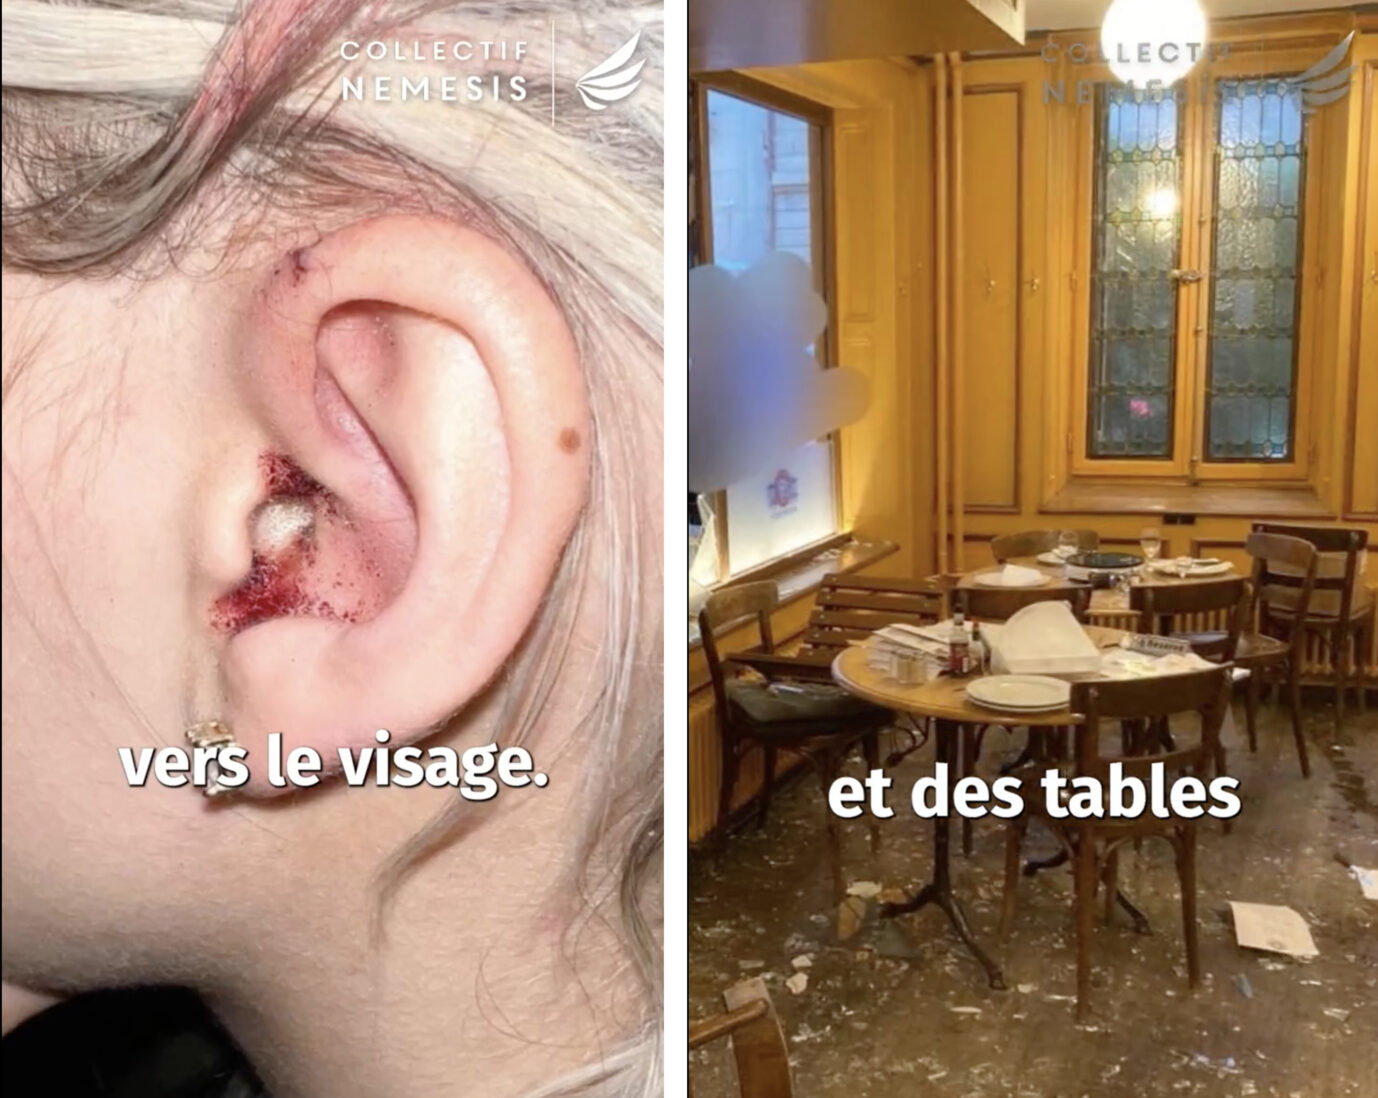 Linksextreme sind hierfür verantwortlich: Das blutig geschlagene Ohr einer Frau und das zerstörte Restaurant